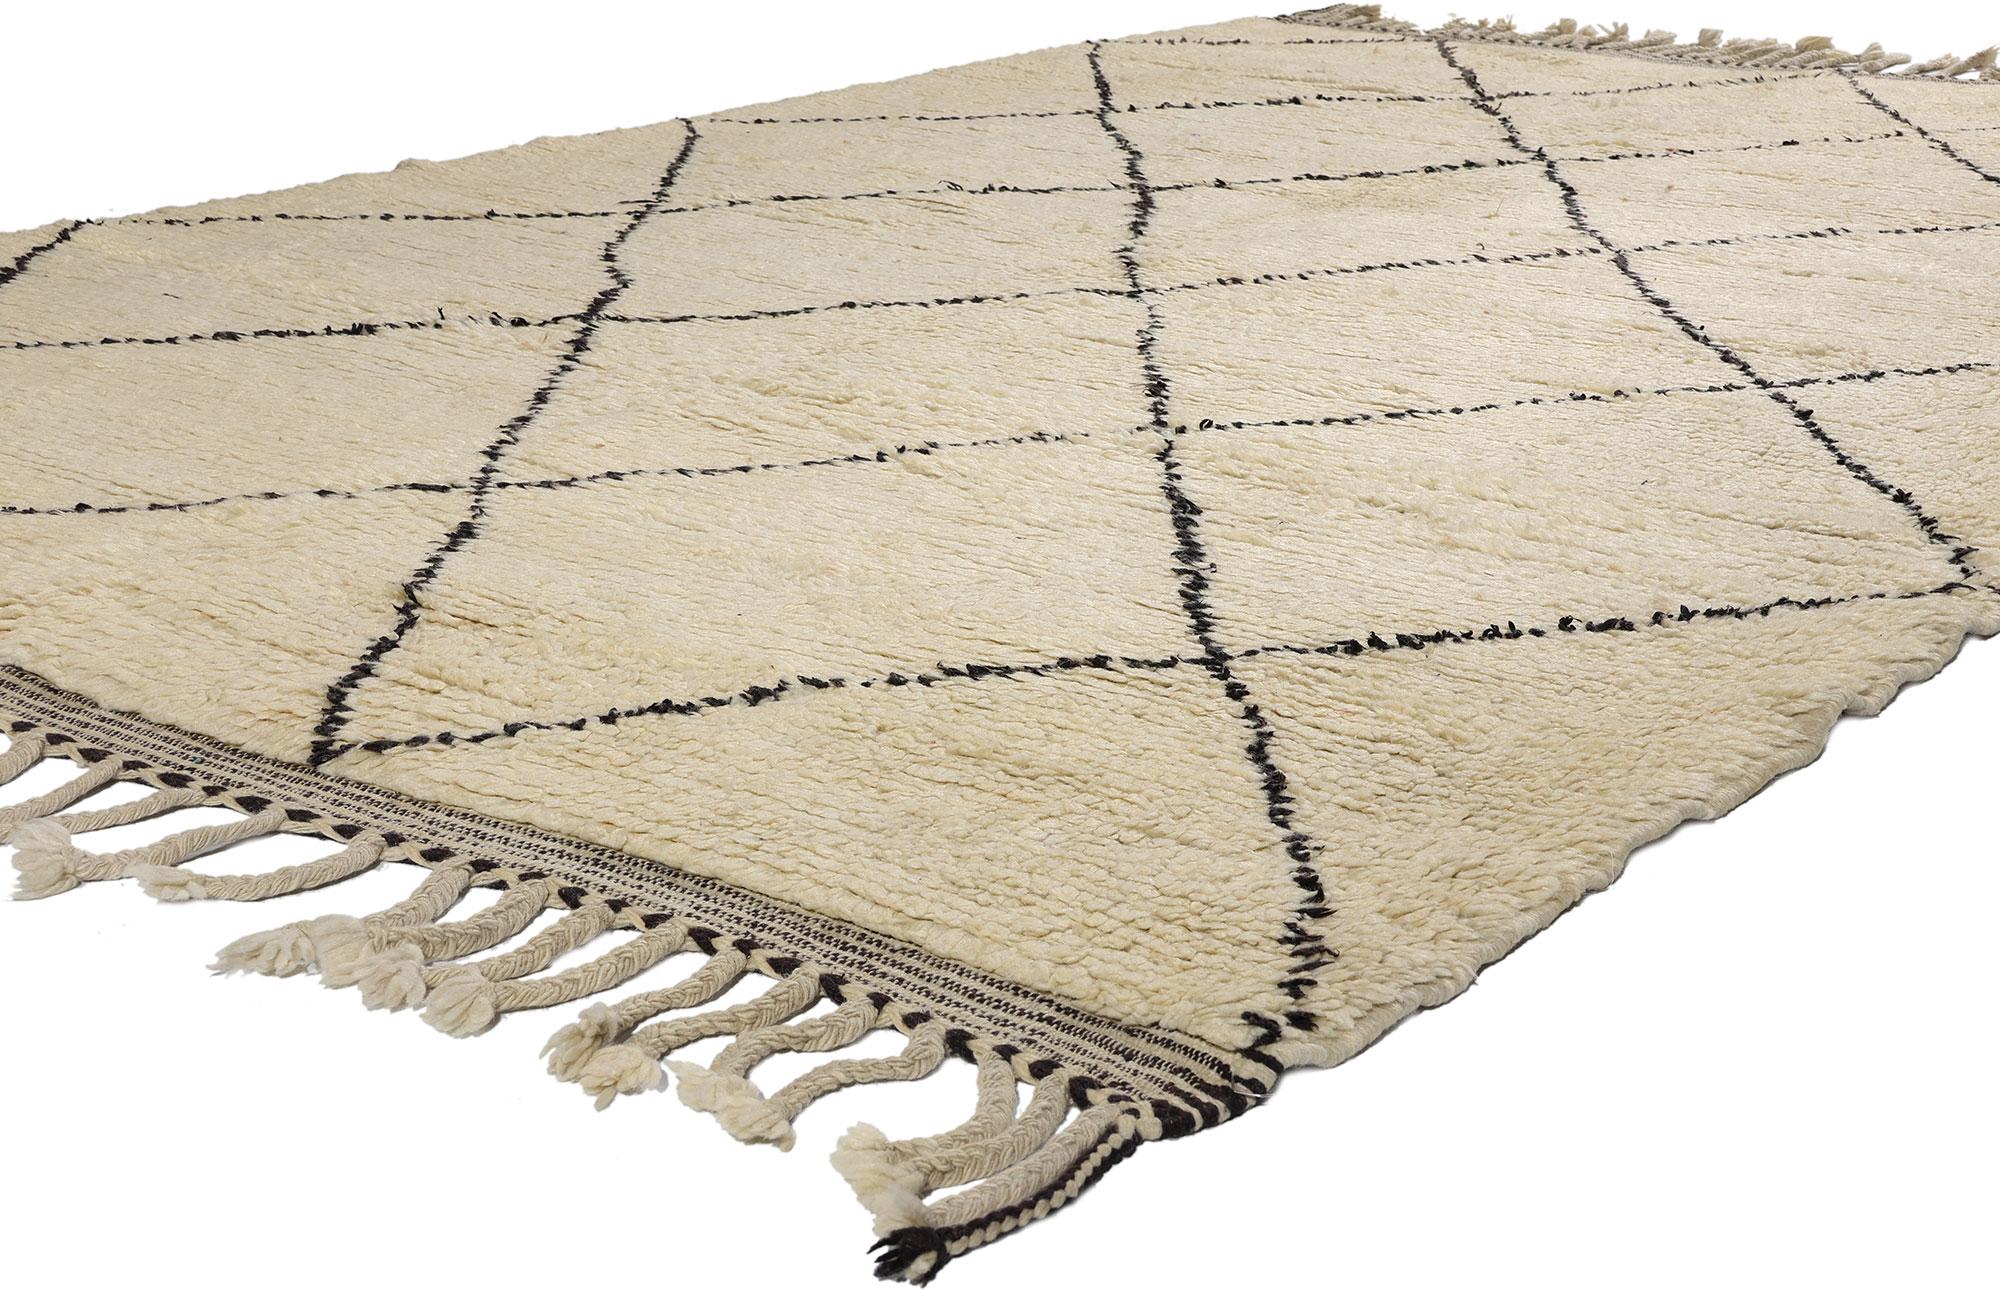 21828 Vintage Marokkanischer Beni Ourain Teppich, 06'08 x 09'10. Diese marokkanischen Teppiche stammen vom Stamm der Beni Ourain, einem integralen Bestandteil der ethnischen Gruppe der Berber in Marokko. Sie werden sorgfältig aus natürlicher,